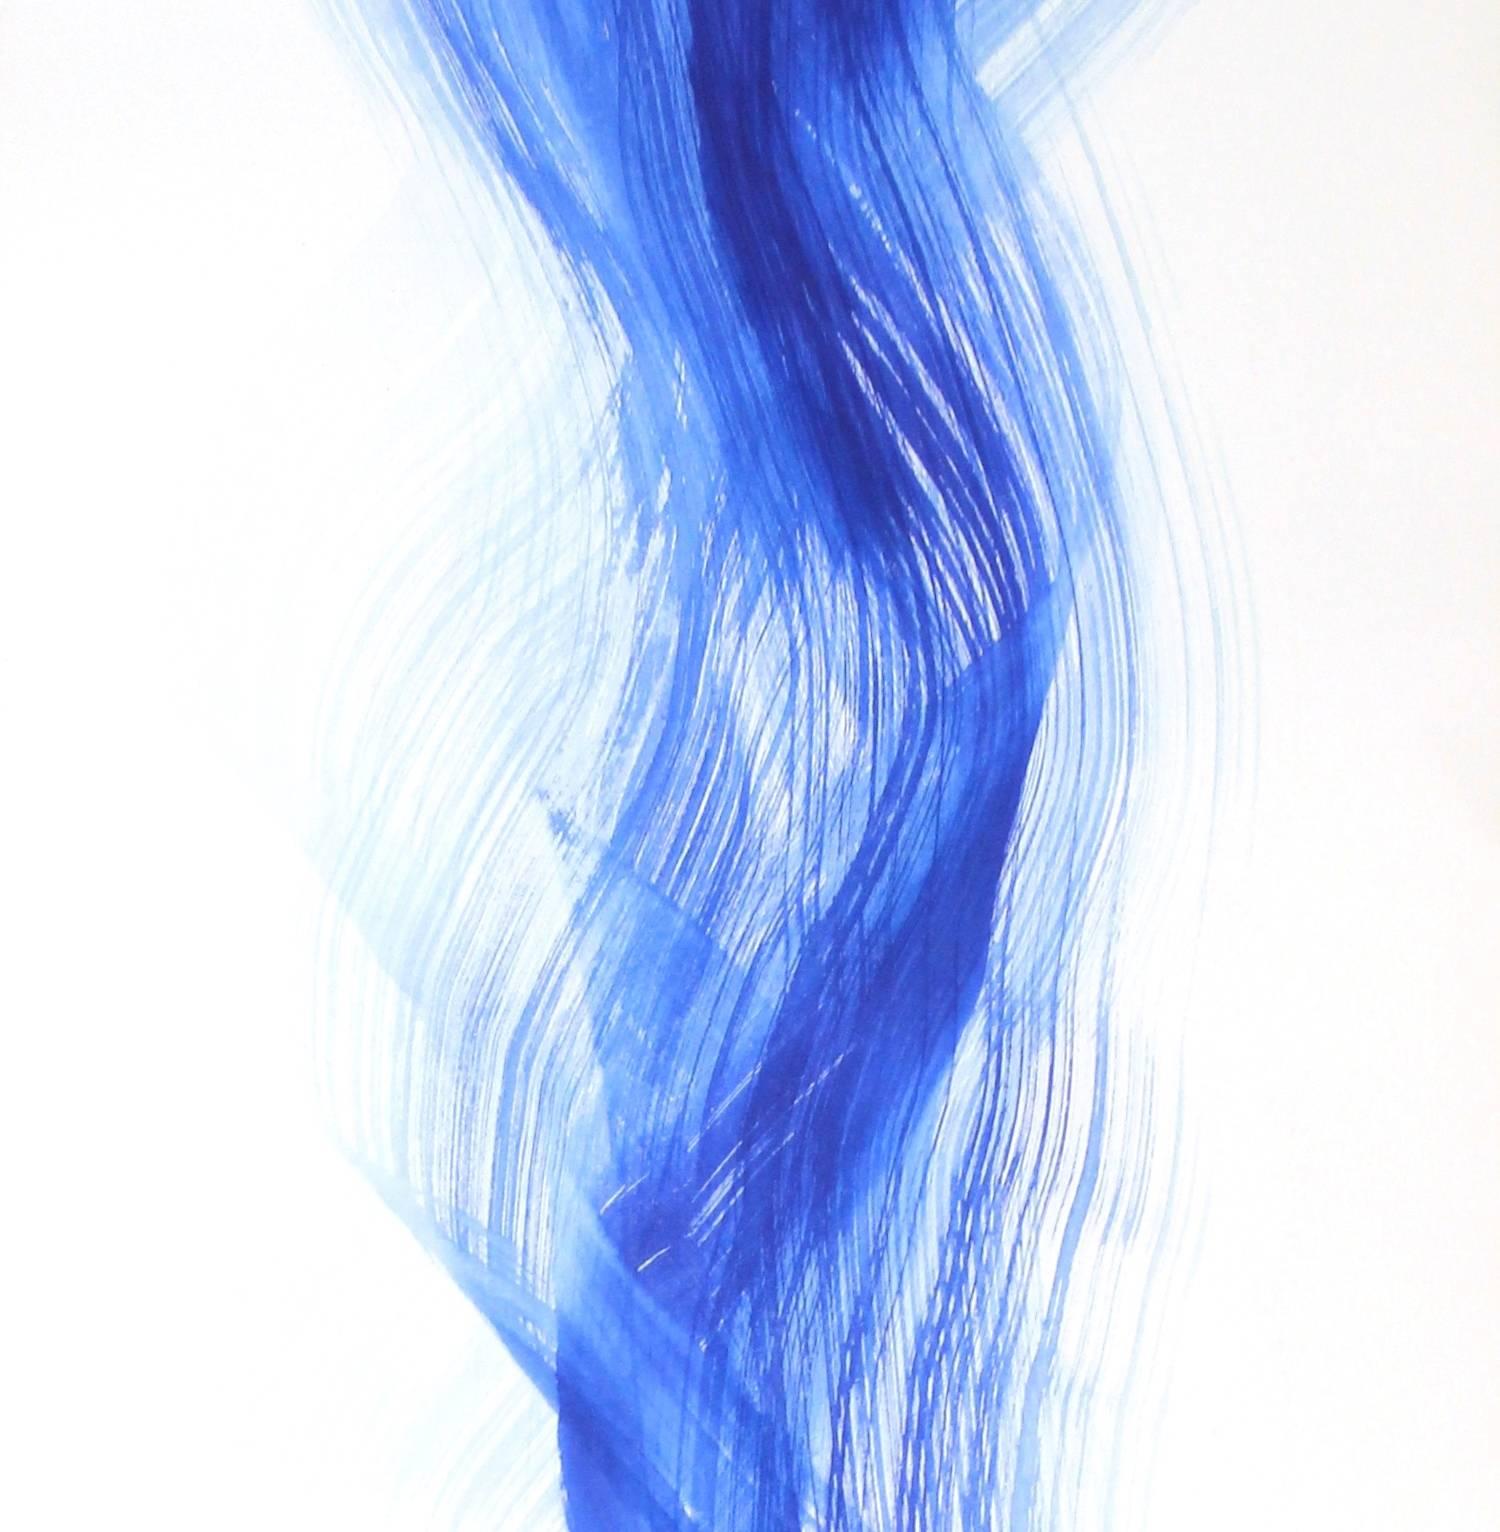 Innocence Blue 12 - Abstract Art by Bettina Mauel